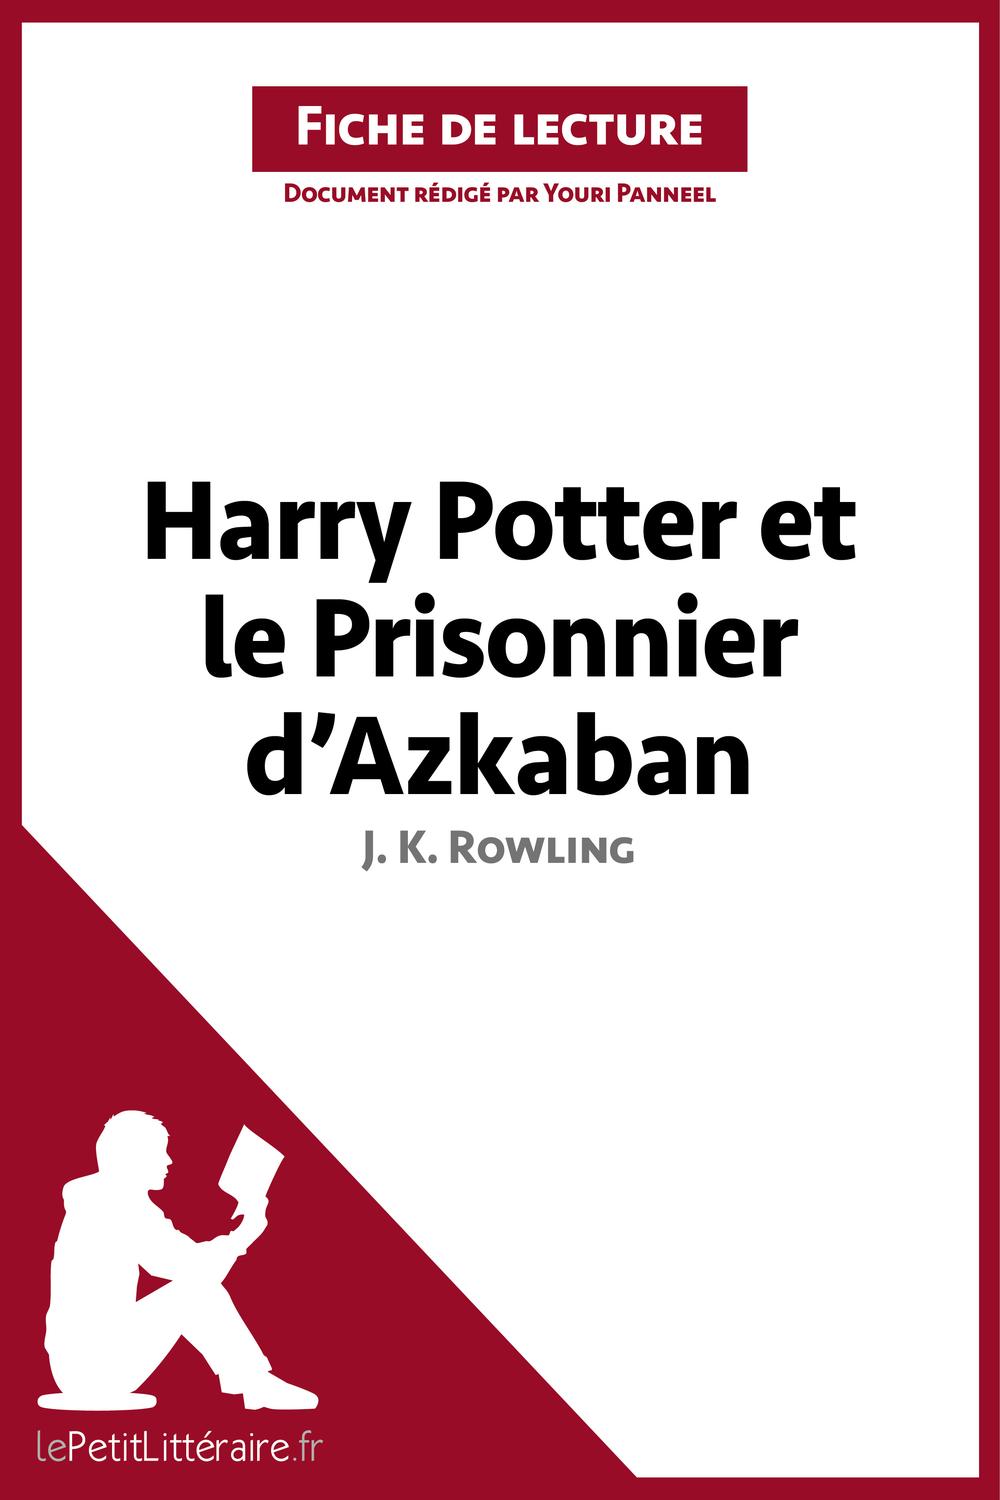 Harry Potter et le Prisonnier d'Azkaban de J. K. Rowling (Fiche de lecture) - lePetitLitteraire, Youri Panneel